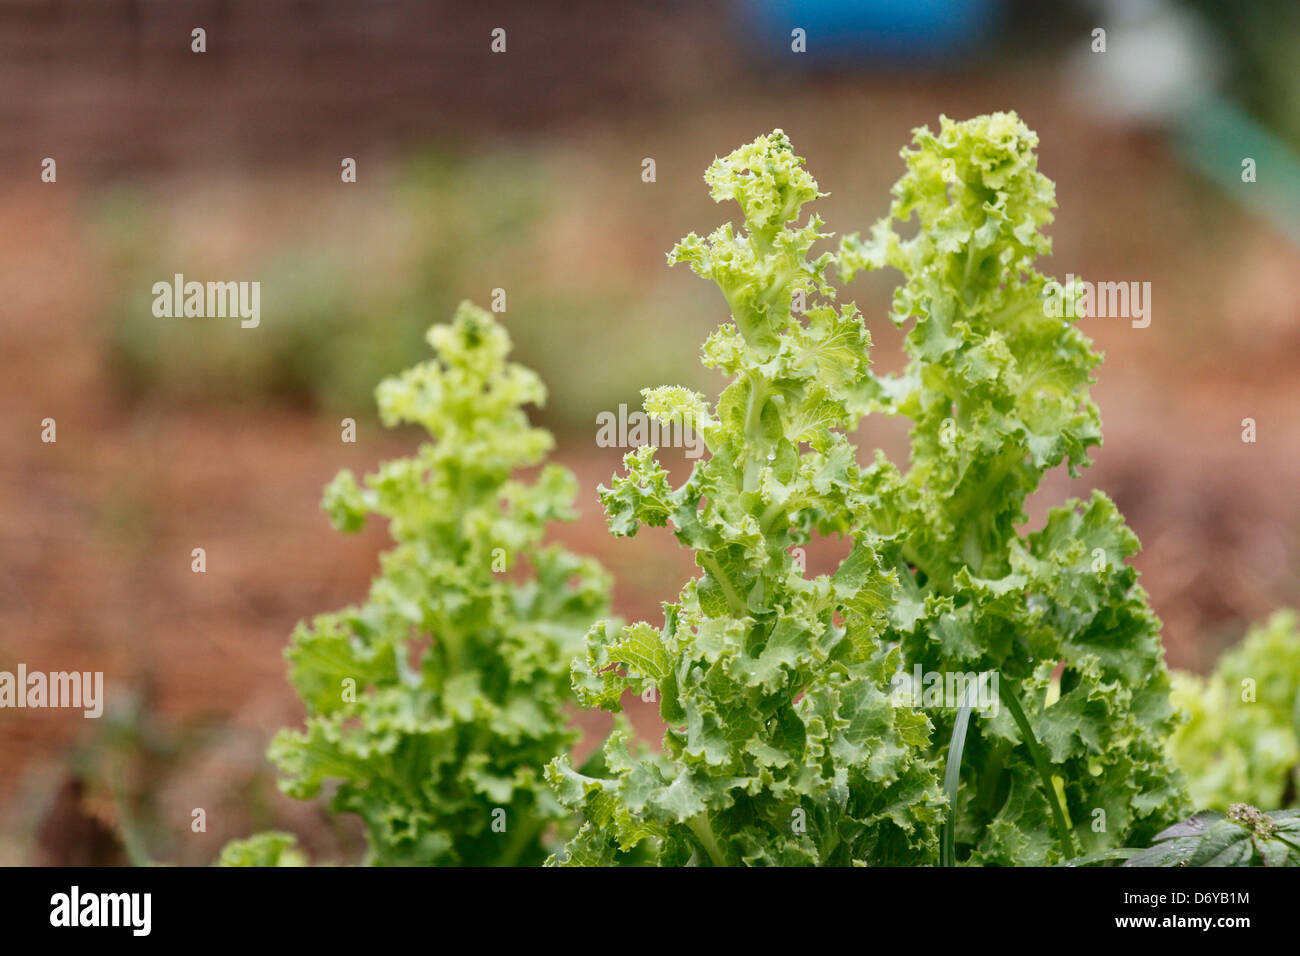 The Green Lettuce in Vegetable plot. Stock Photo